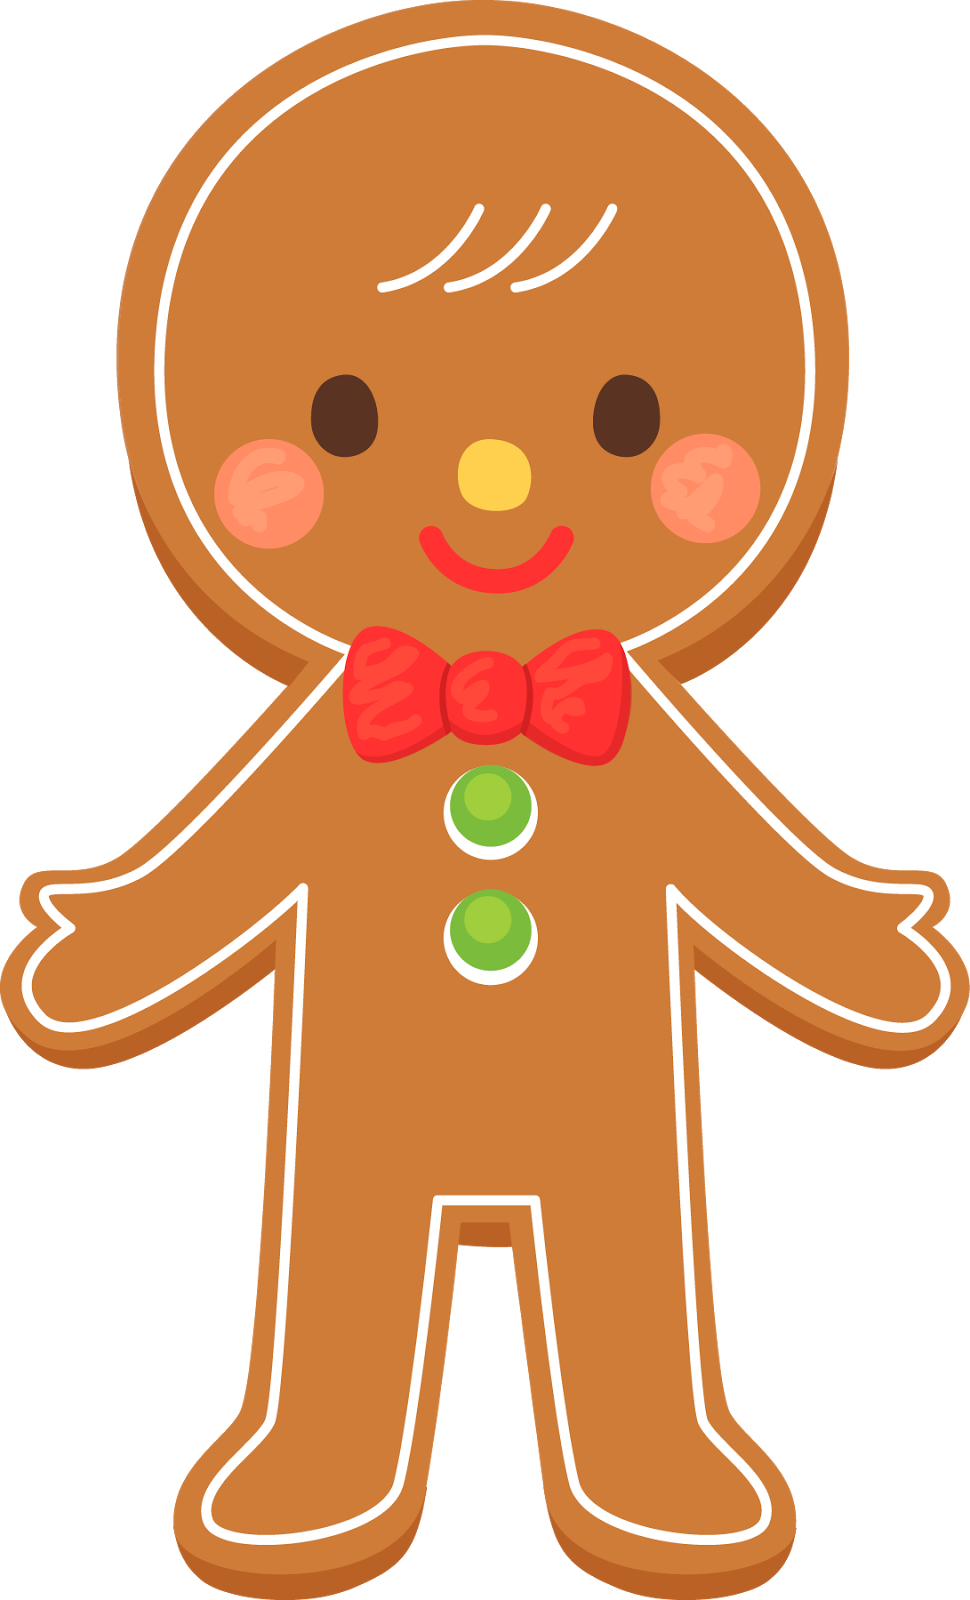 Gingerbread Men Clip Art images